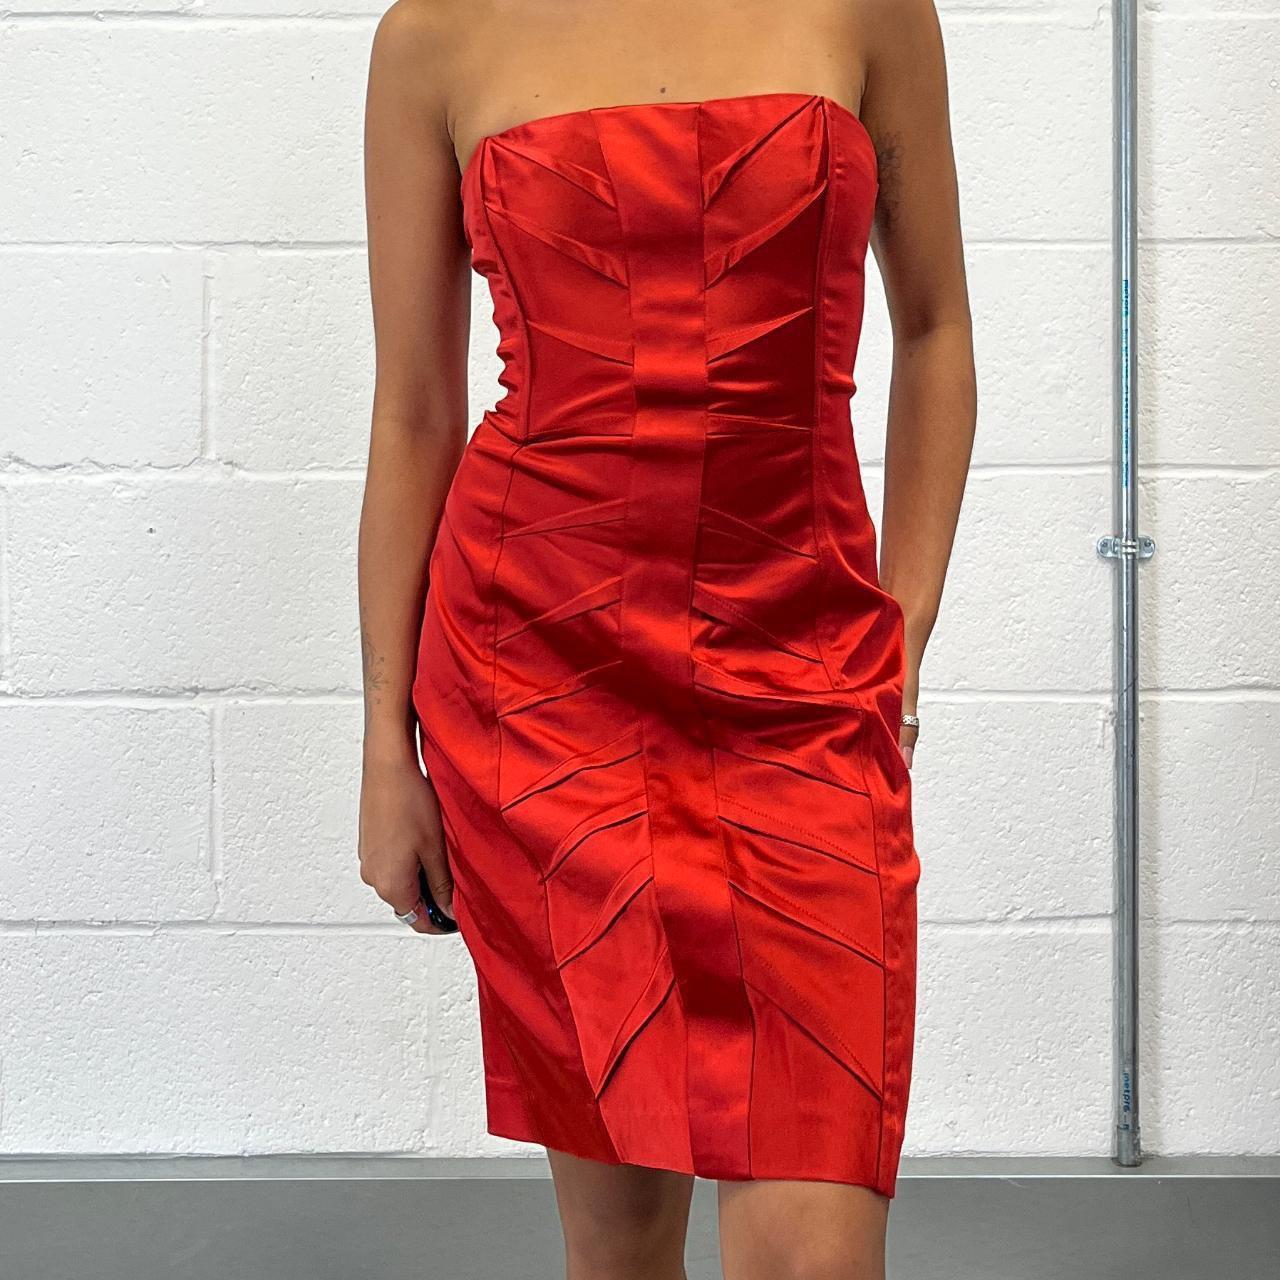 Vintage y2k red satin strapless dress from bebe,... - Depop